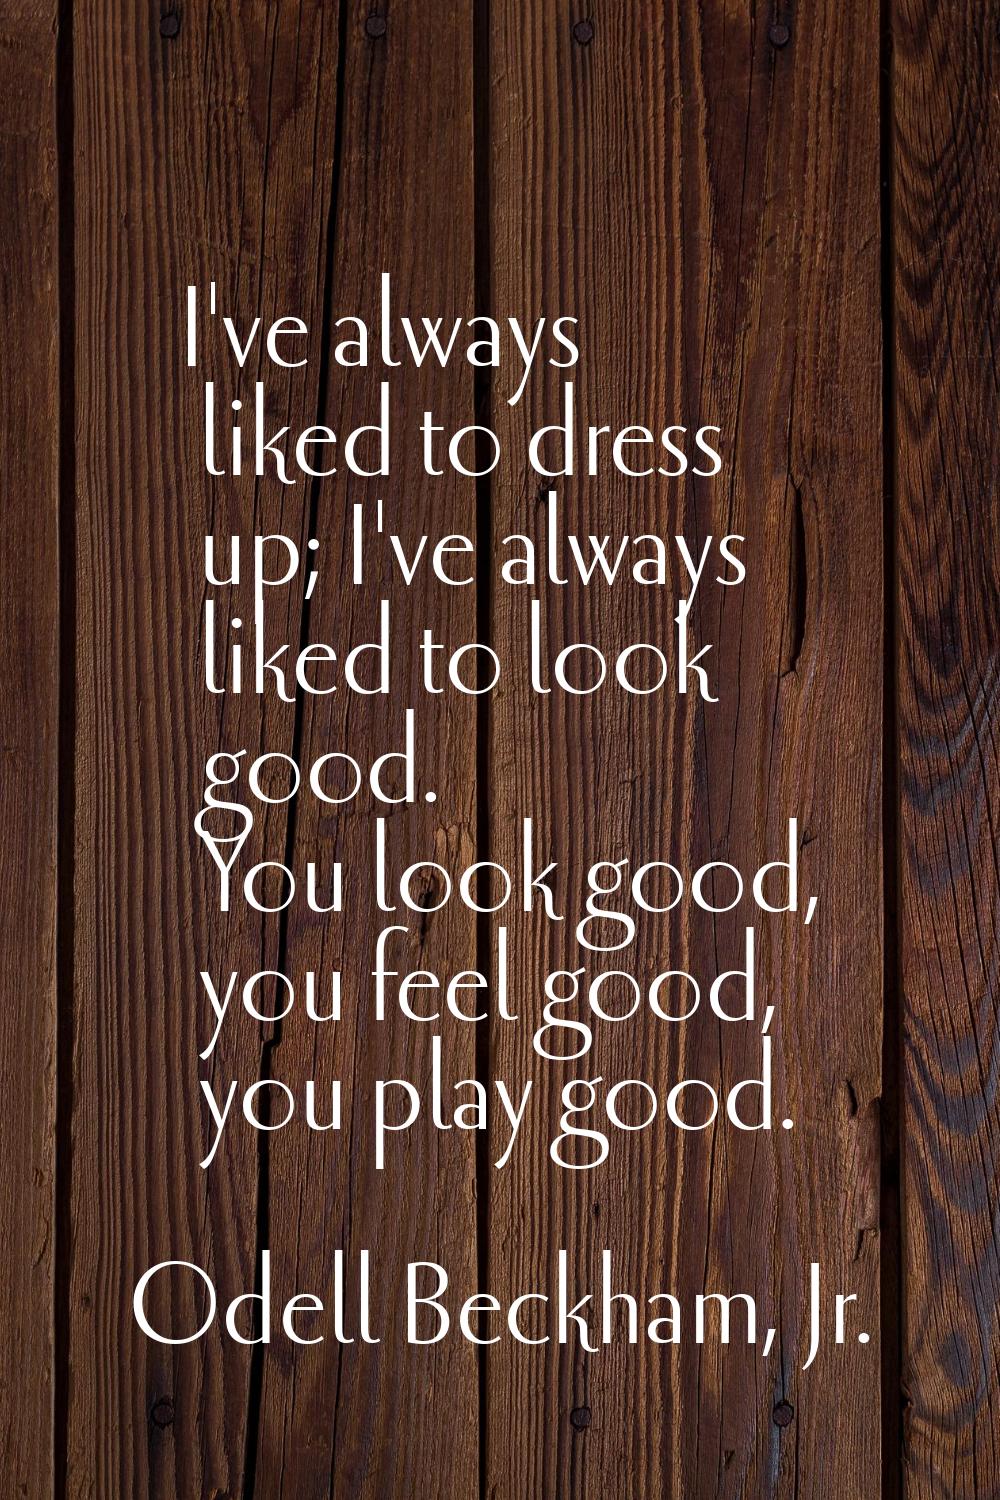 I've always liked to dress up; I've always liked to look good. You look good, you feel good, you pl